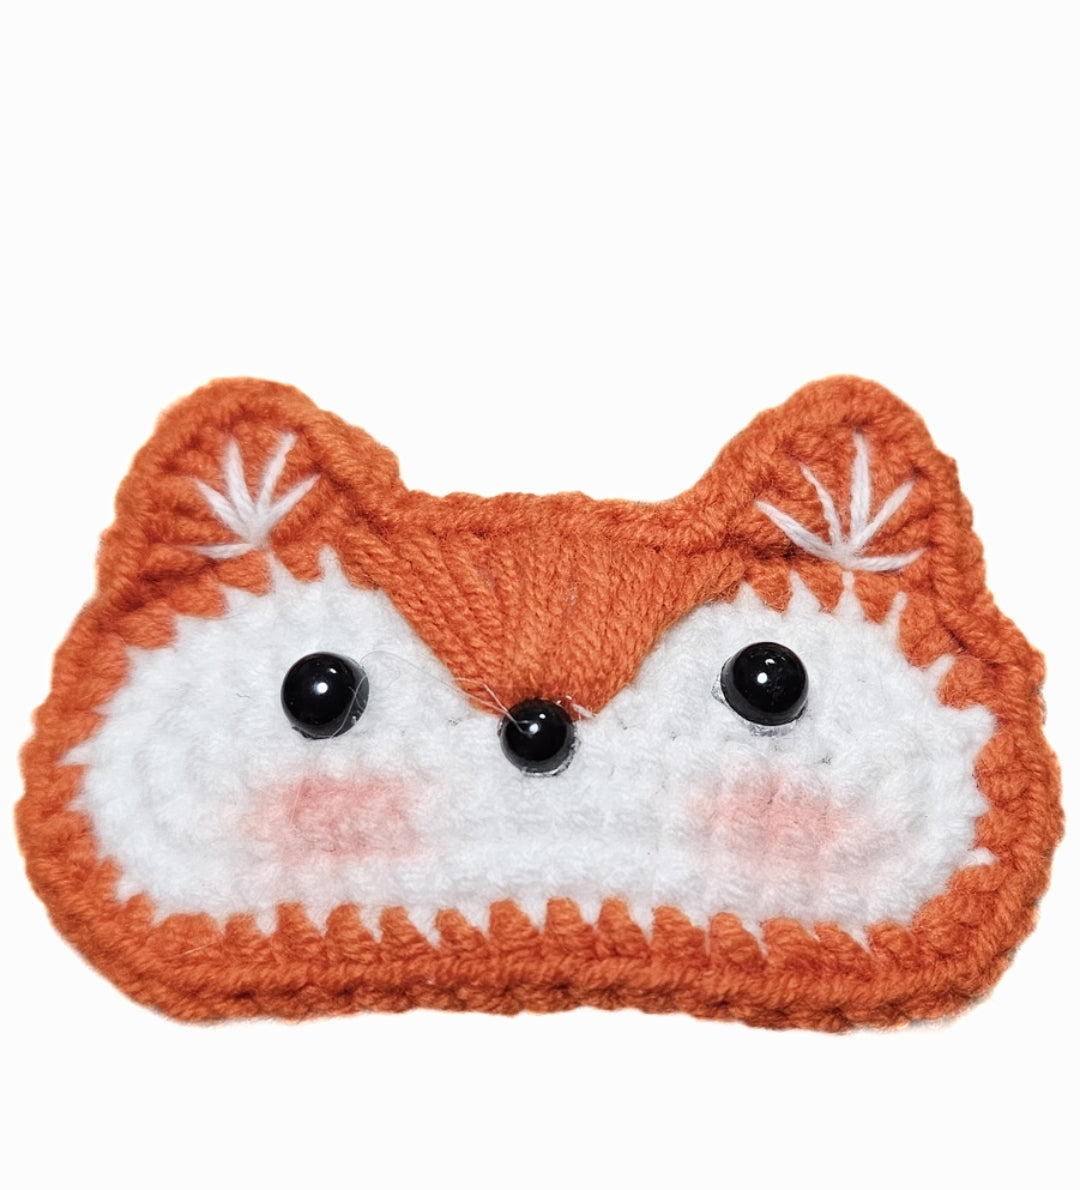 Crochet Animal Hair clips